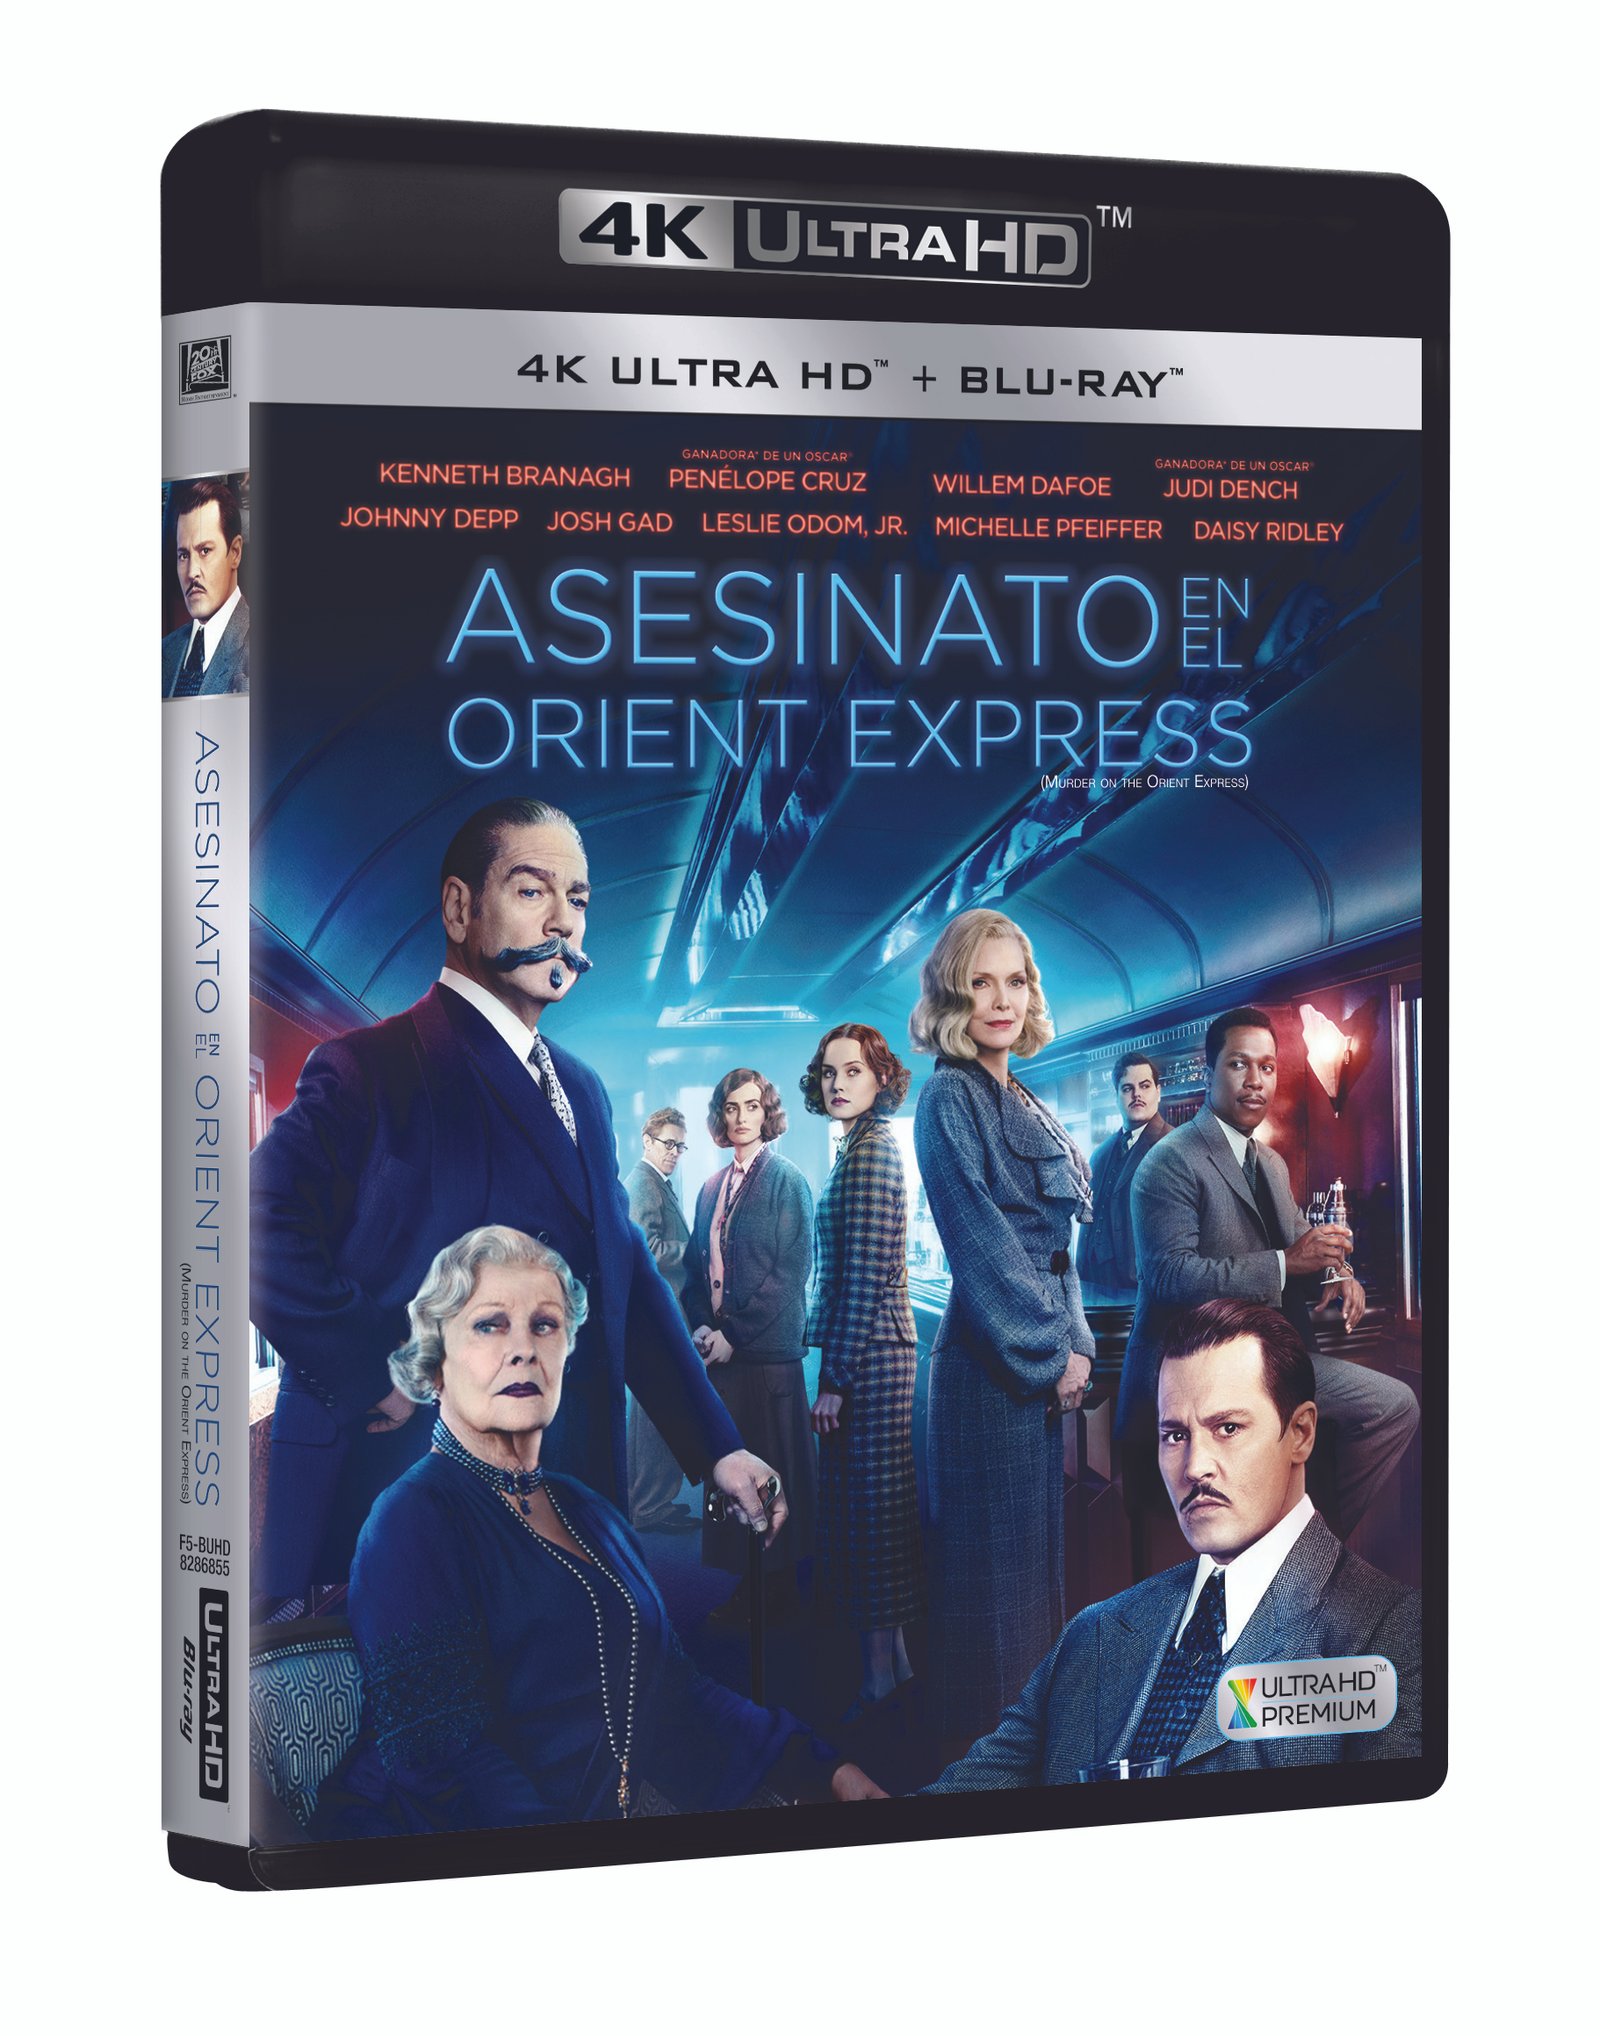 'Asesinato en el Orient Express' a la venta en 4K, Steel, Blu-ray y Dvd el 21 de marzo • En tu pantalla